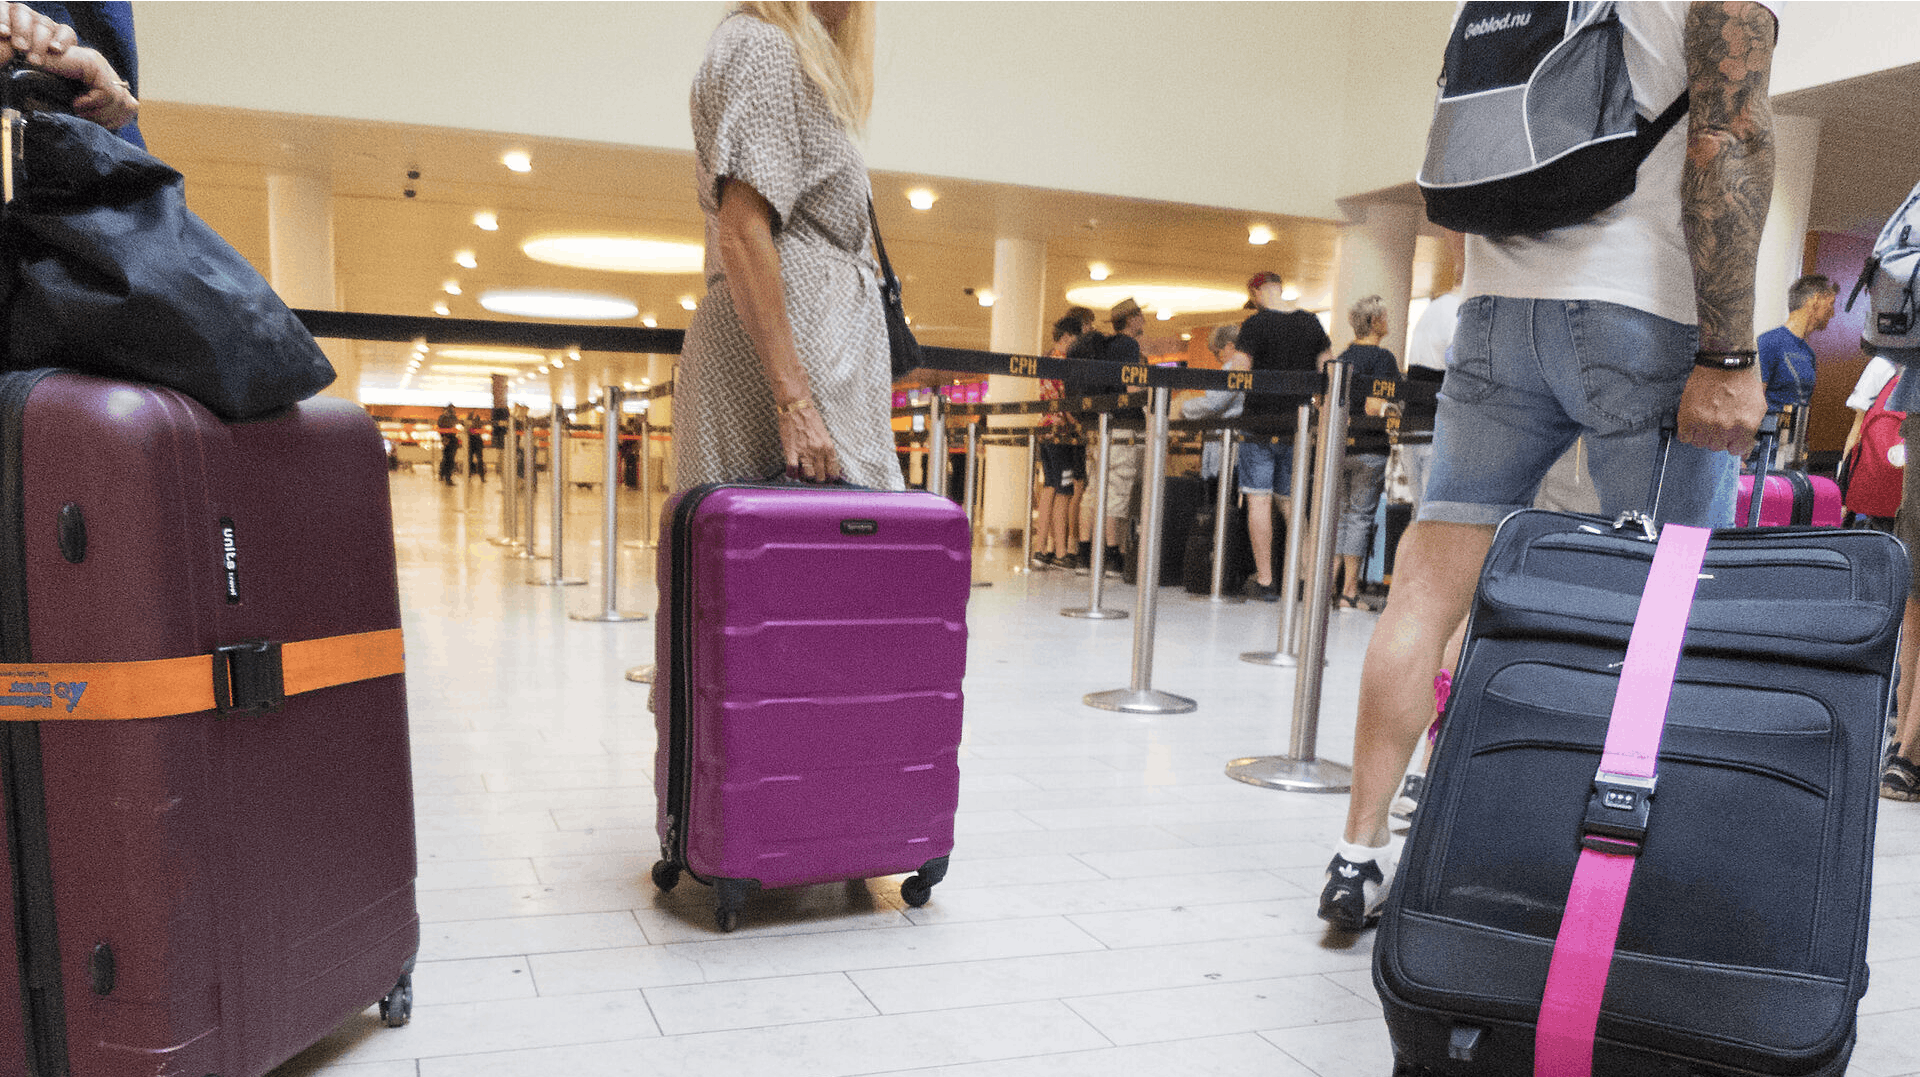 Nej, du kan selvfølgelig ikke købe en kuffert af lufthavnen, hvis andre har glemt den.